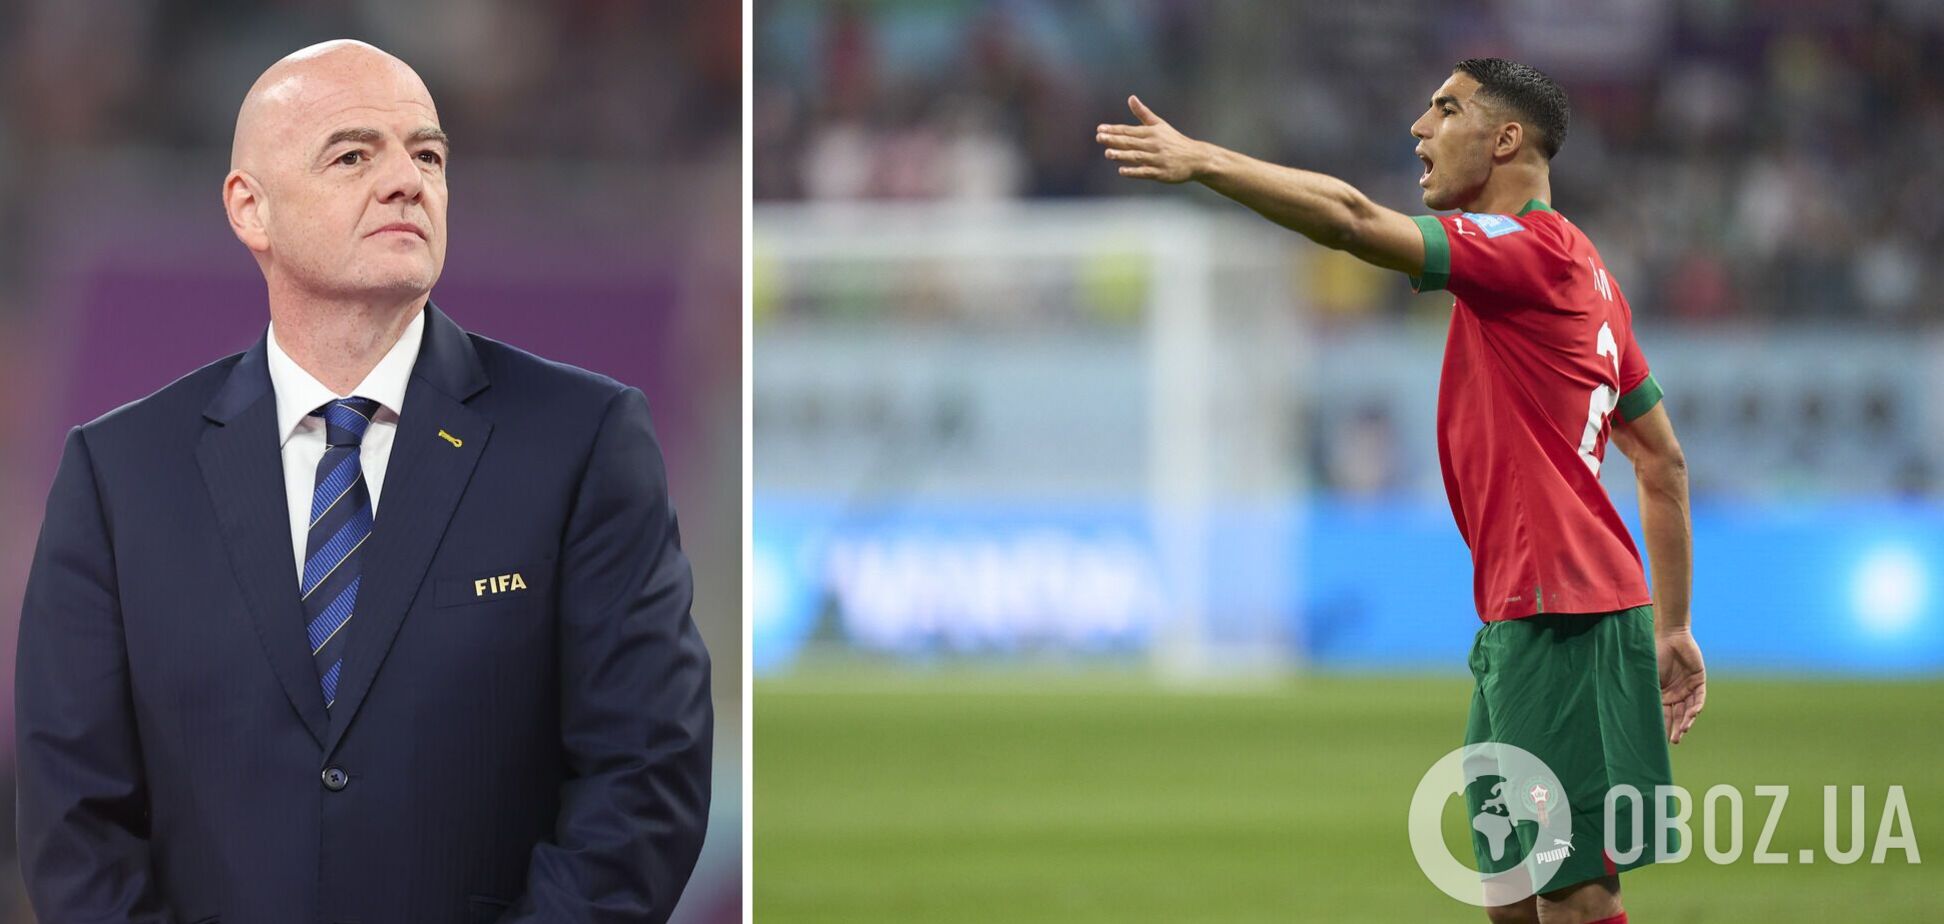 На президента ФІФА накричали після матчу Хорватія – Марокко. Подробиці скандалу